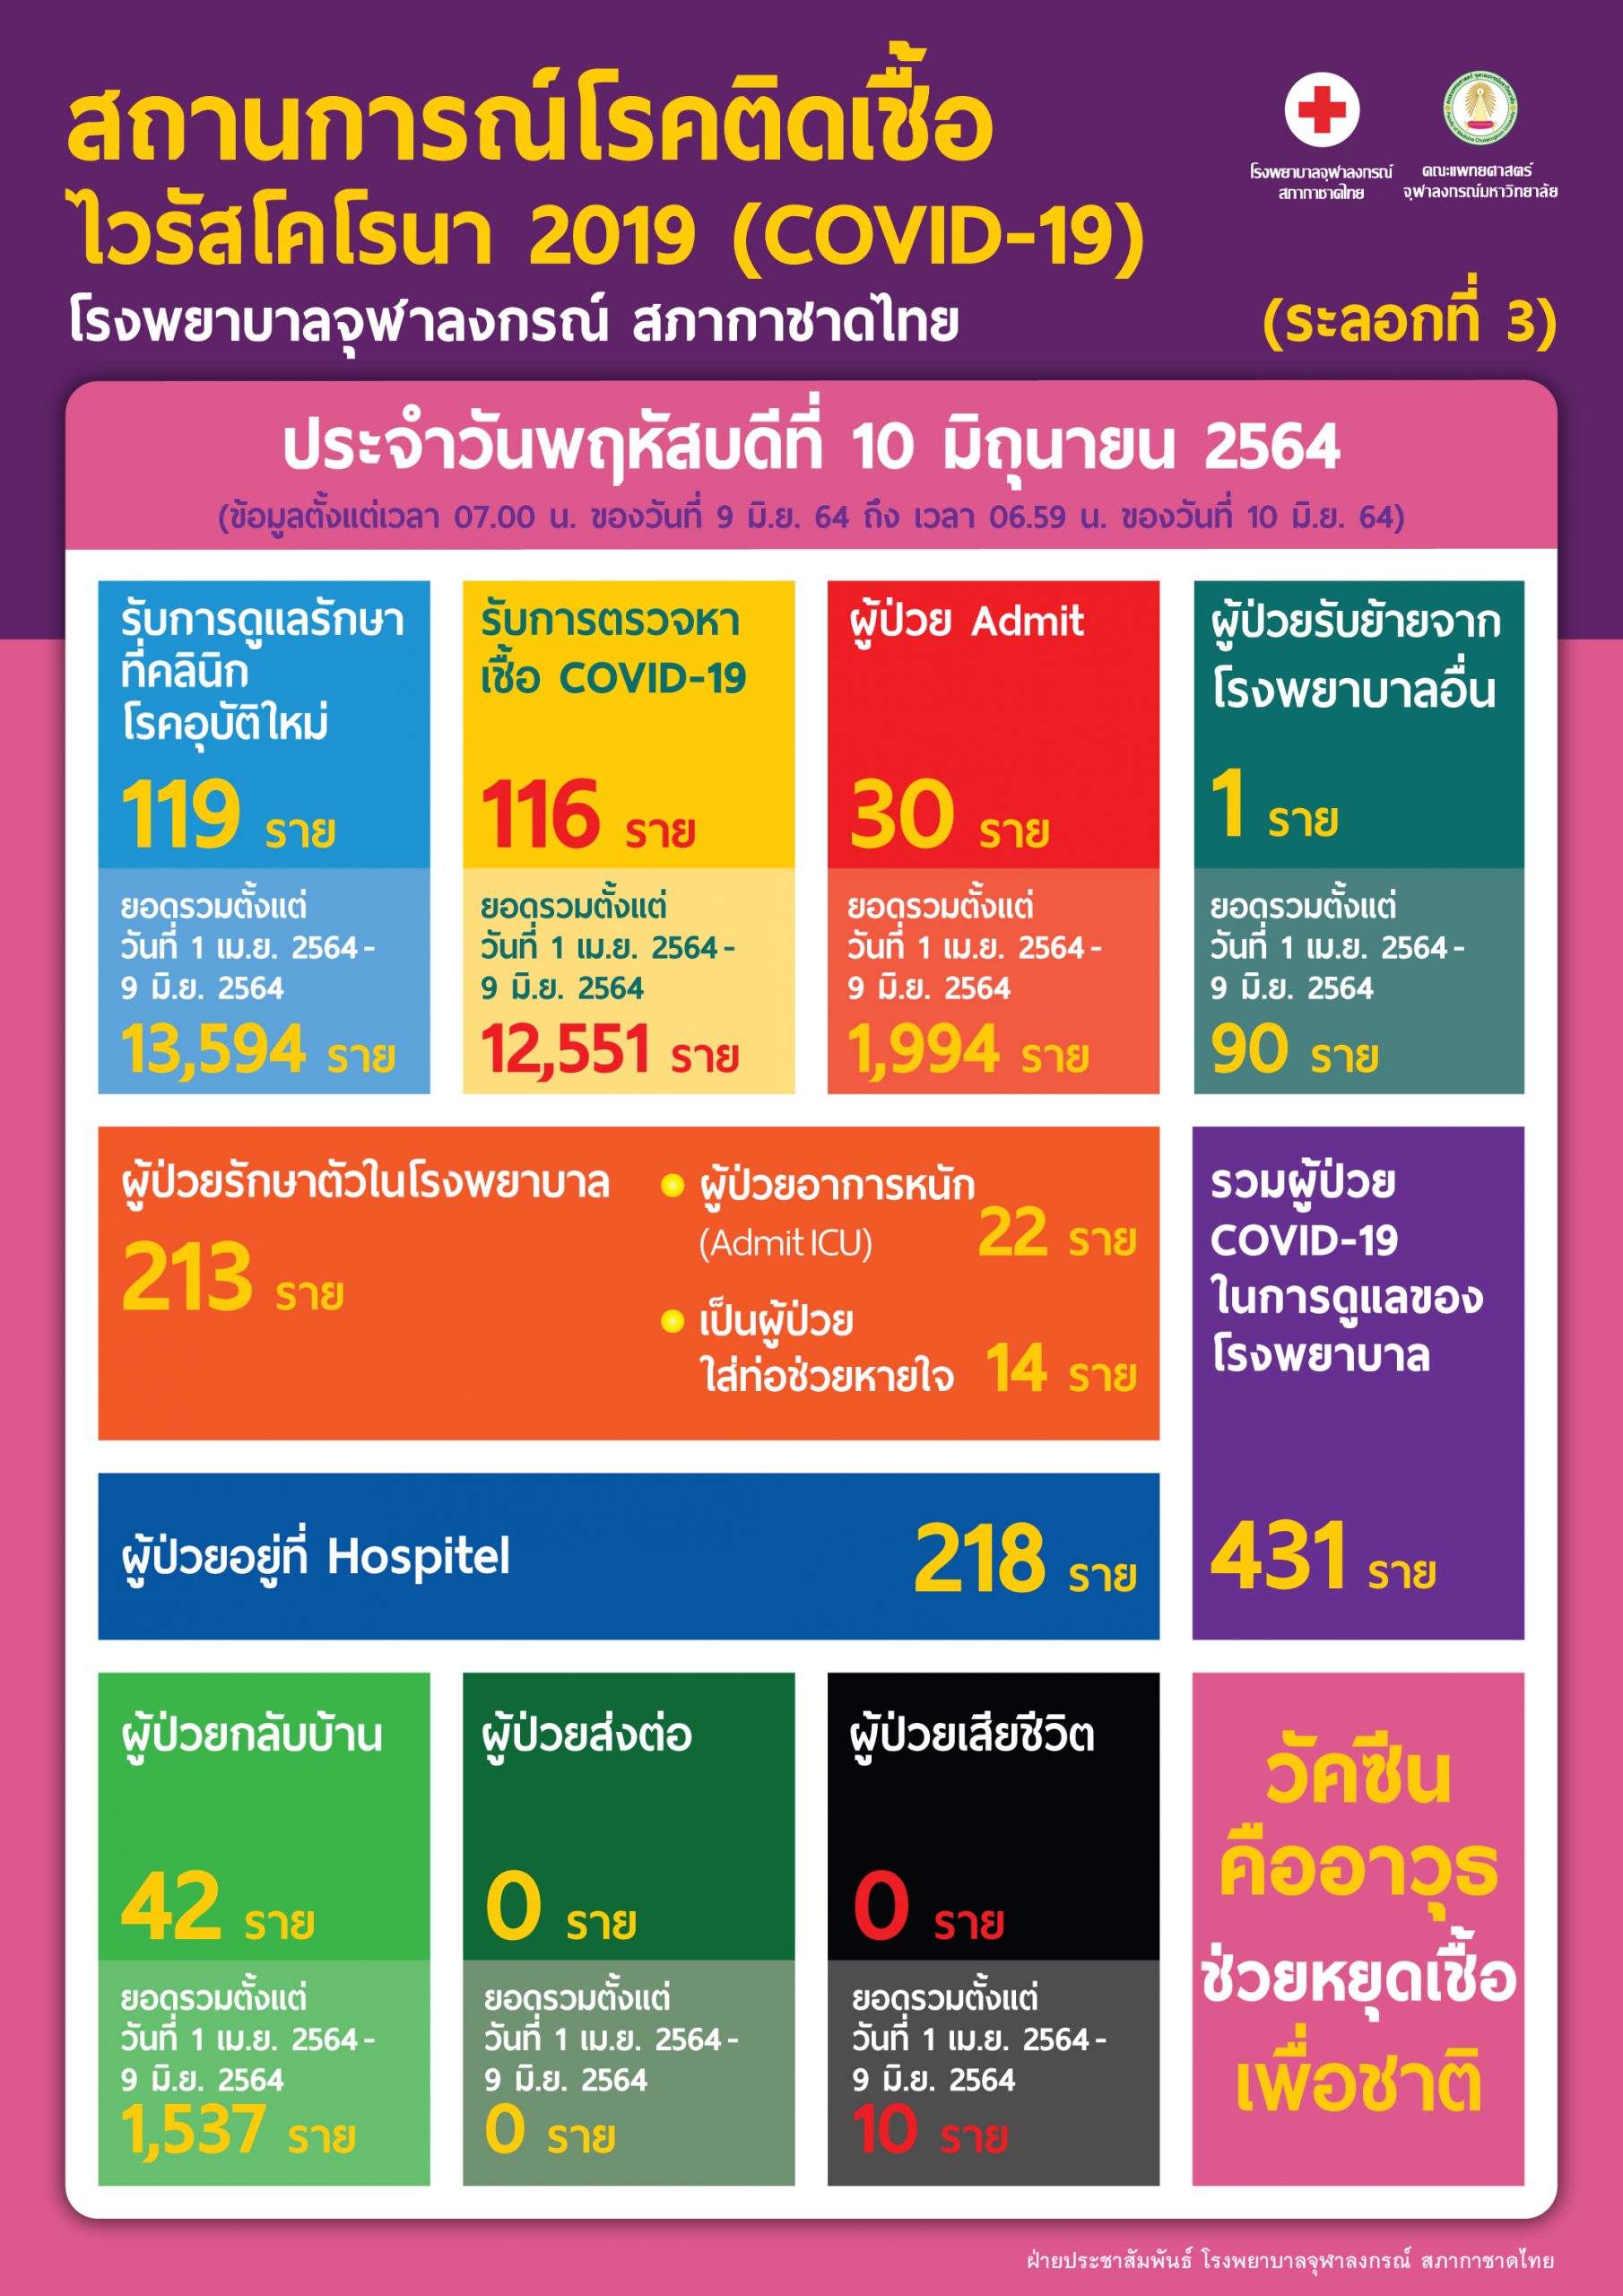 สถานการณ์โรคติดเชื้อไวรัสโคโรนา 2019 (COVID-19) (ระลอกที่ 3) โรงพยาบาลจุฬลงกรณ์ สภากาชาดไทย ประจำวันพฤหัสบดีที่ 10 มิถุนายน 2564